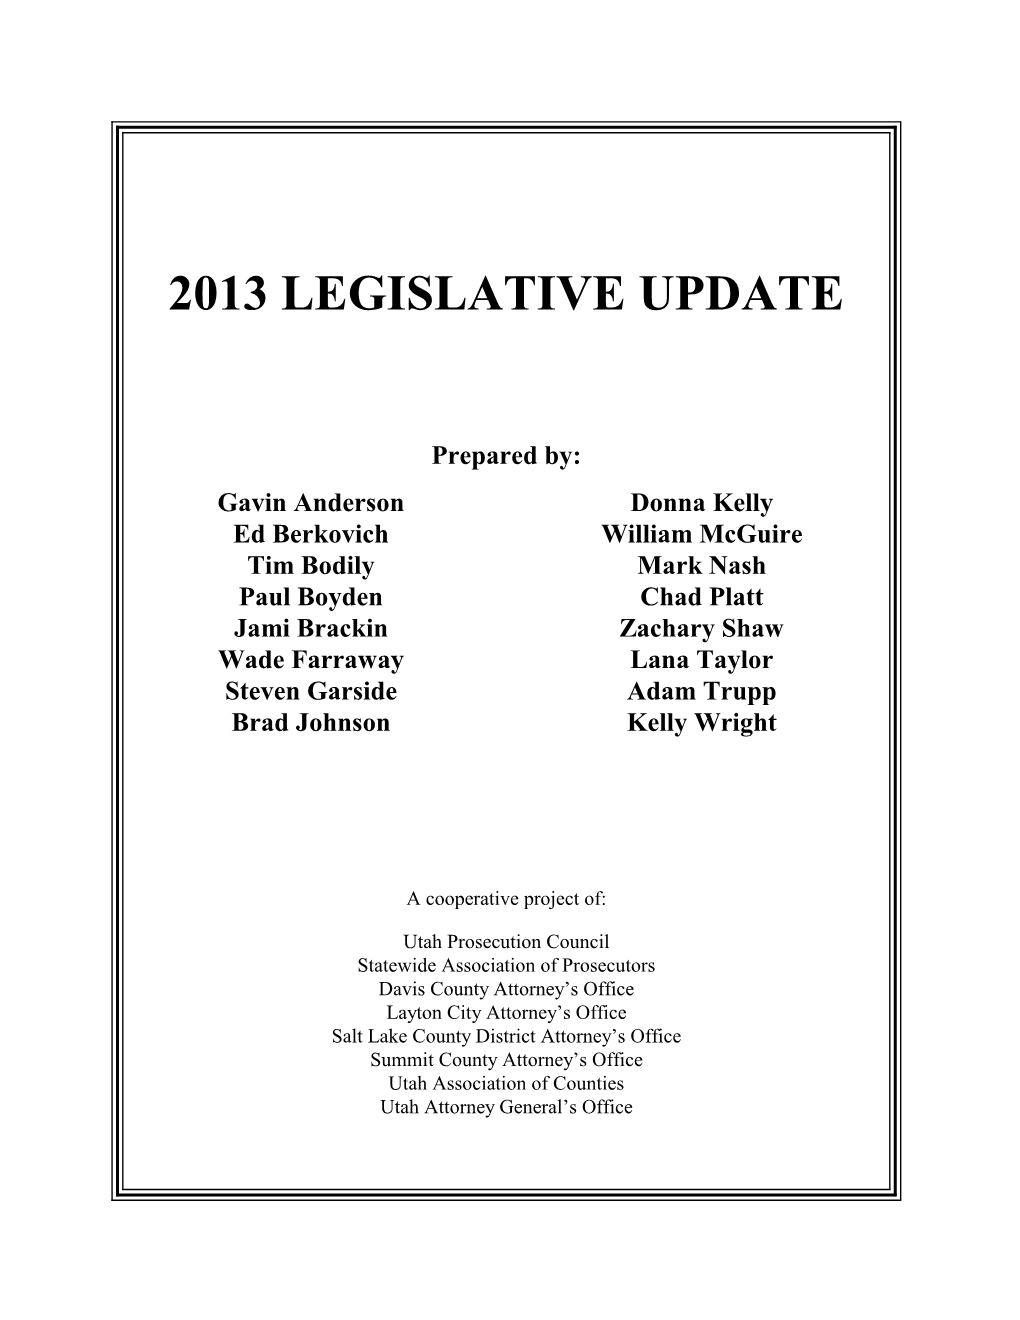 2013 Legislative Update